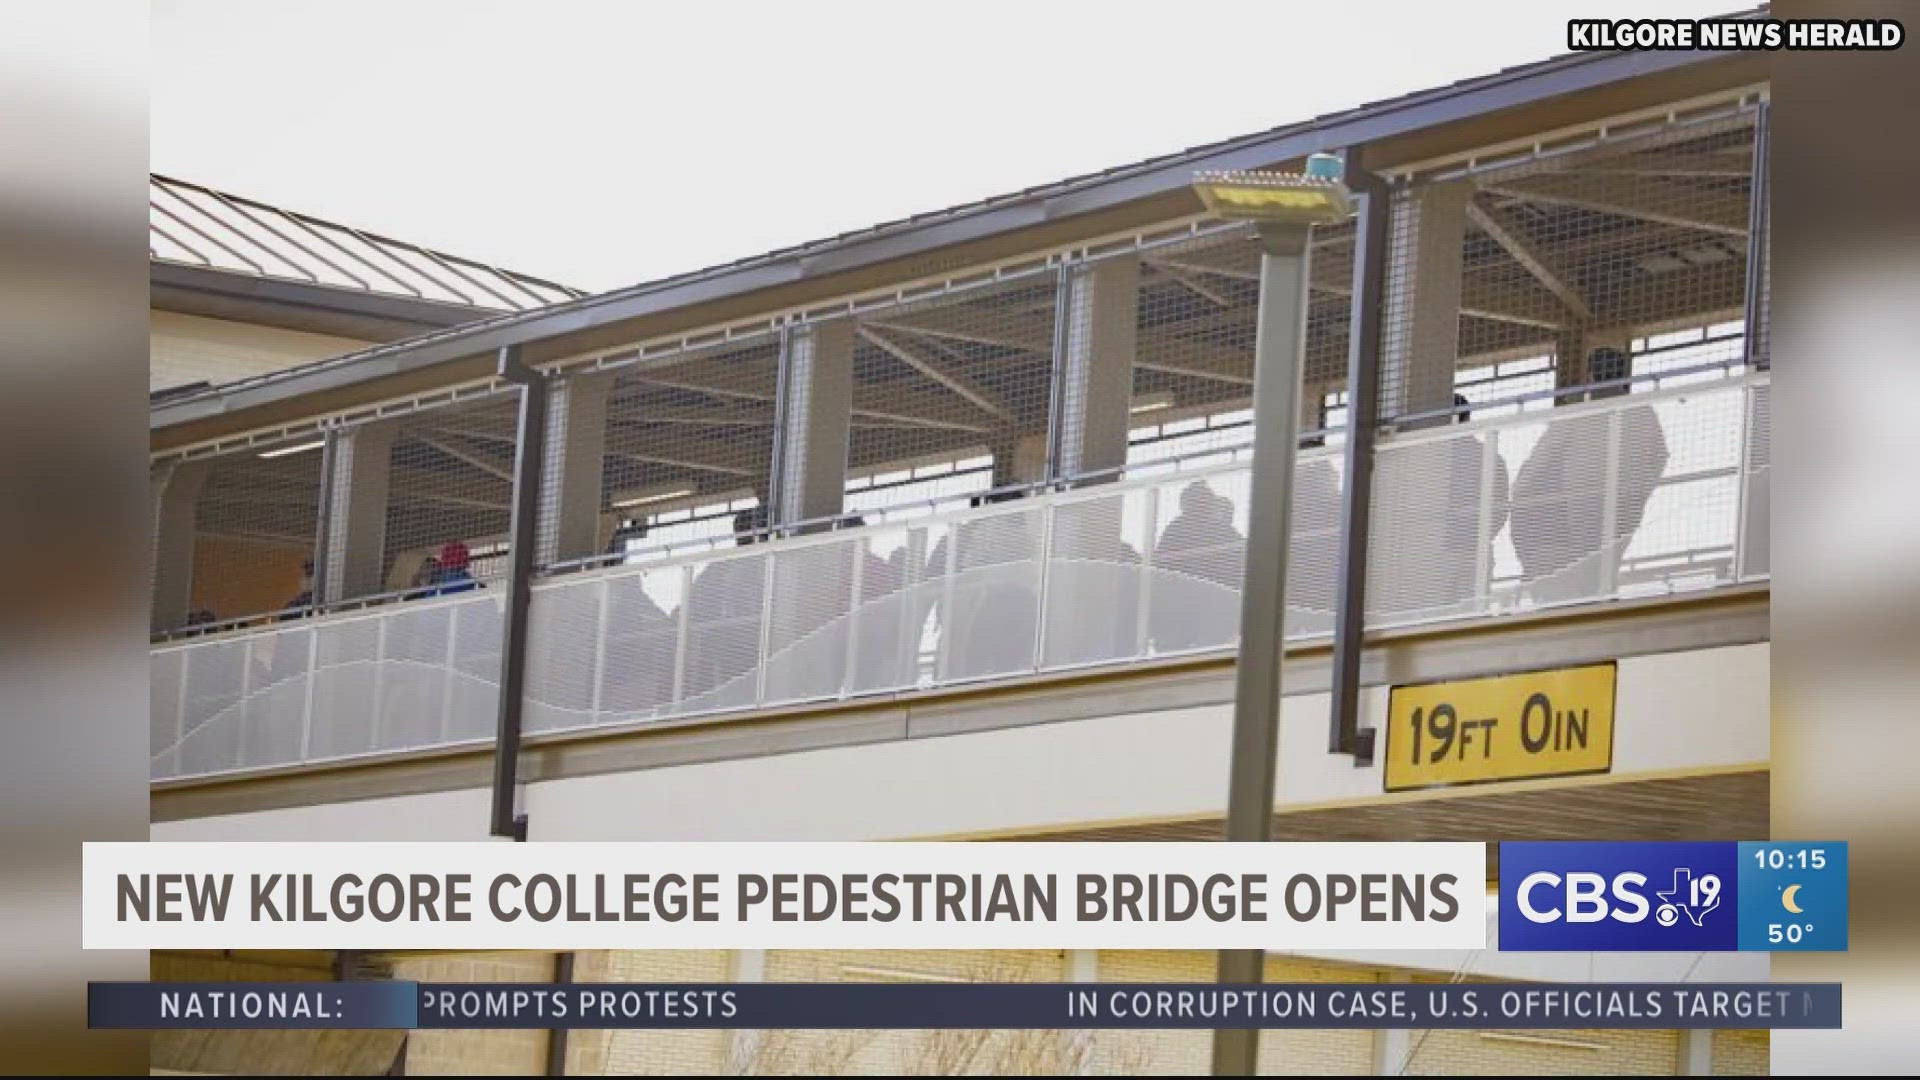 Kilgore College pedestrian bridge opens at last after long wait